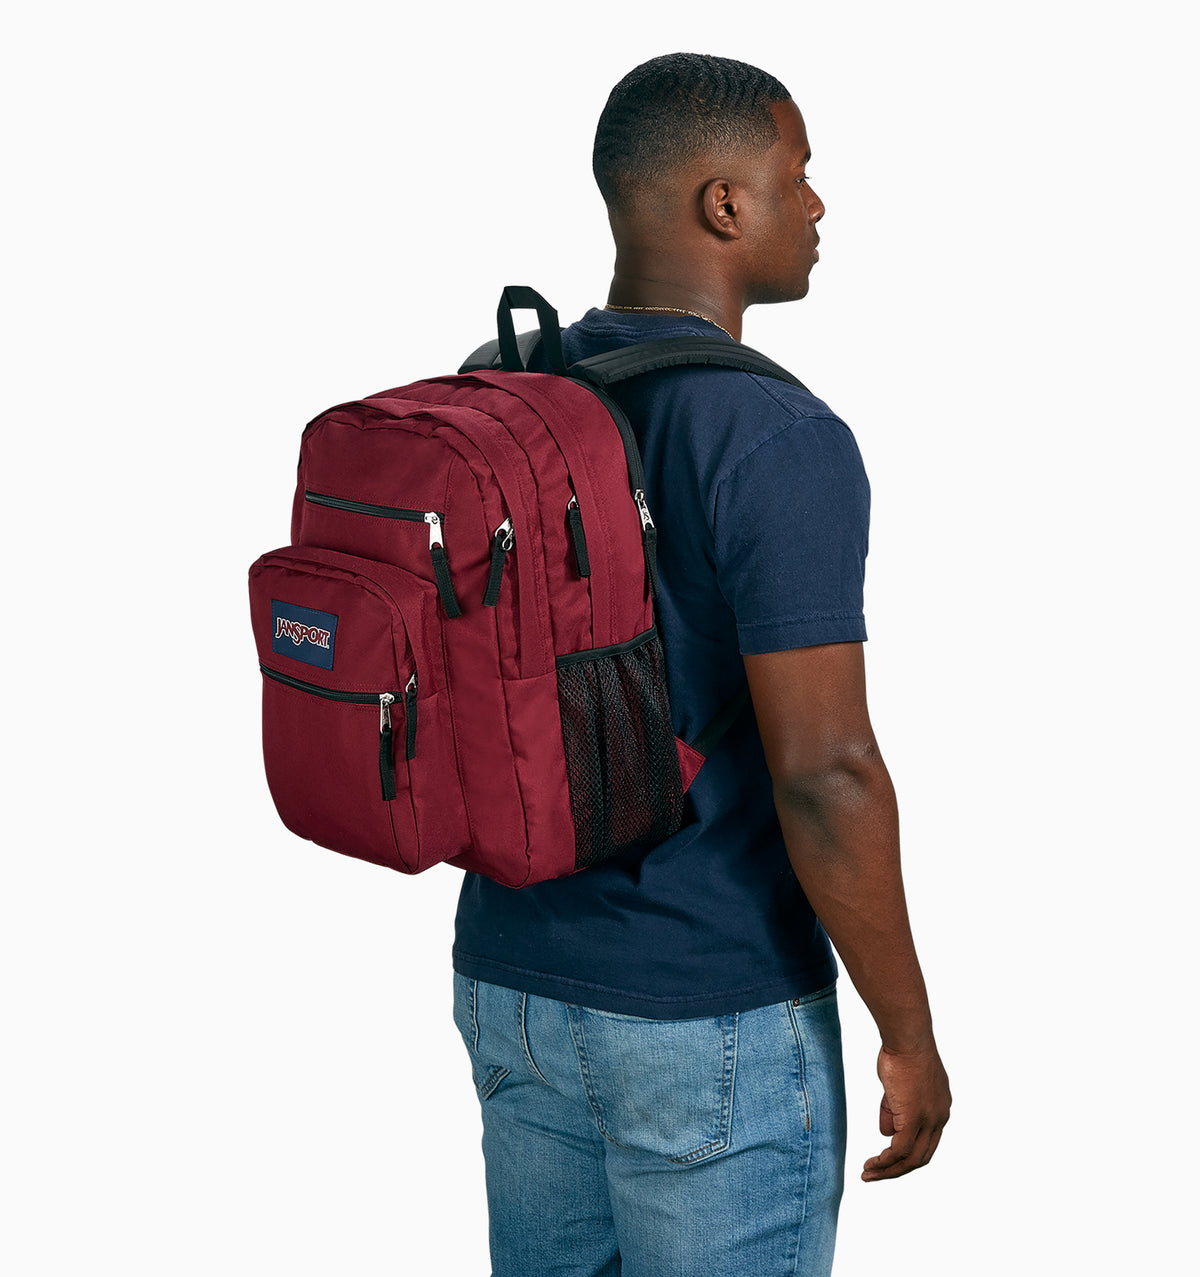 JanSport 16" Big Student Laptop Backpack 34L - Russet Red